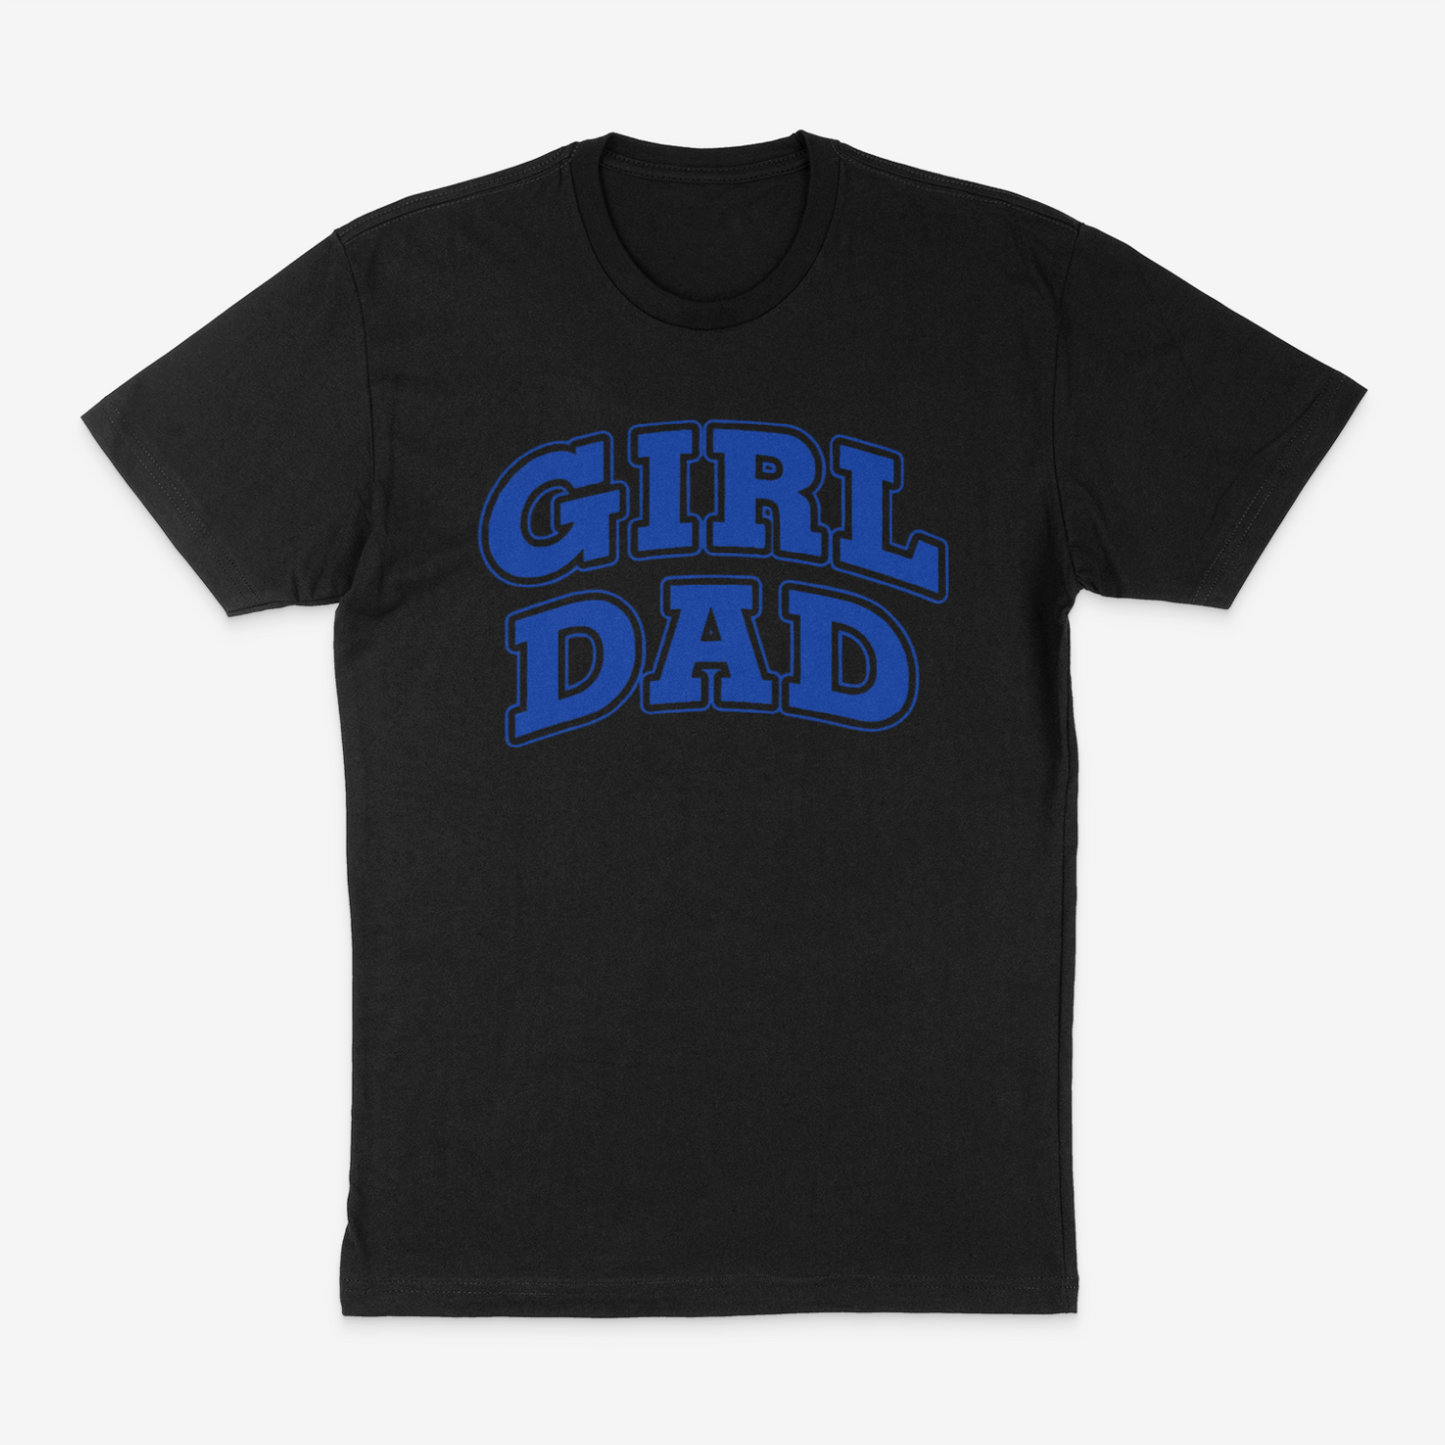 Girl Dad Tee ( Blue)